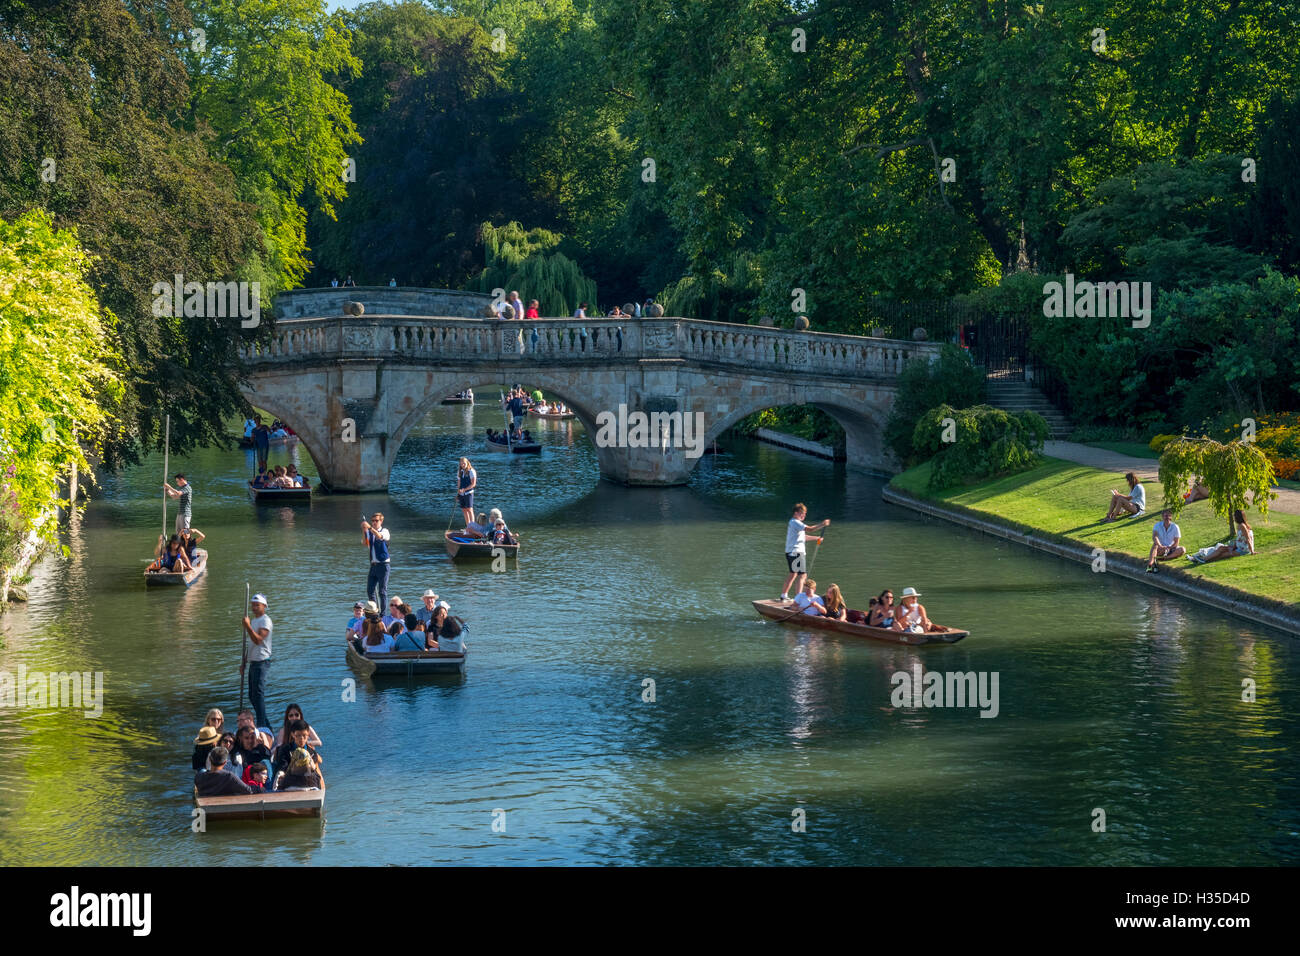 Punting on The Backs, River Cam, Cambridge, Cambridgeshire, England, United Kingdom, Europe Stock Photo